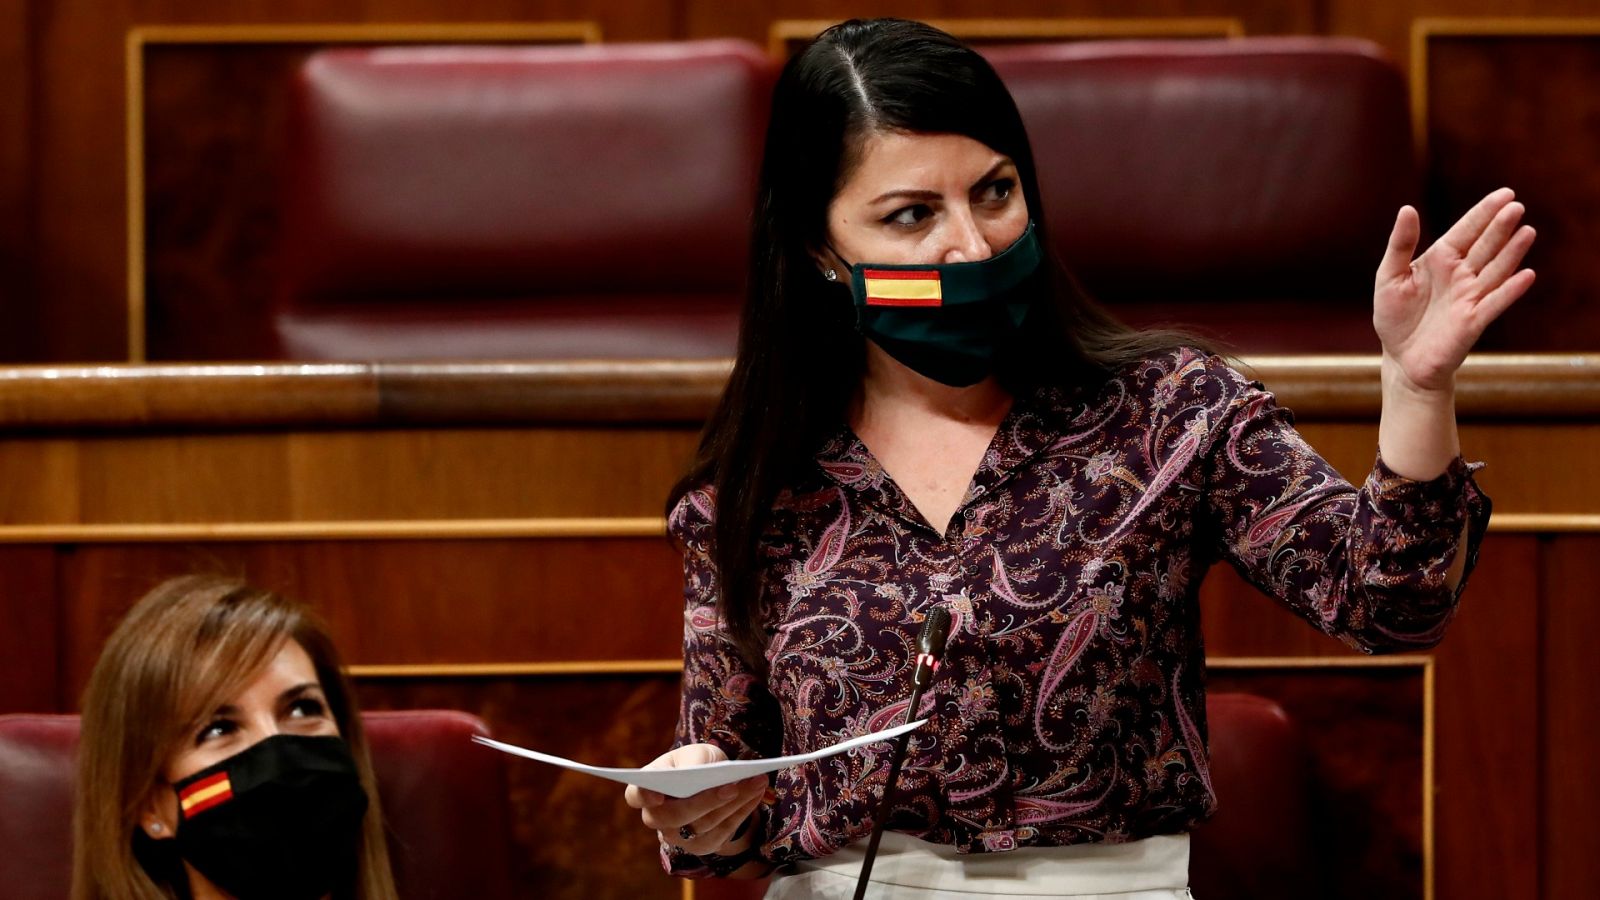 Moción de censura| Olona acusa a PP y PSOE de tener pactado el desarrollo y el relato de la moción de censura: "Fue una performance"